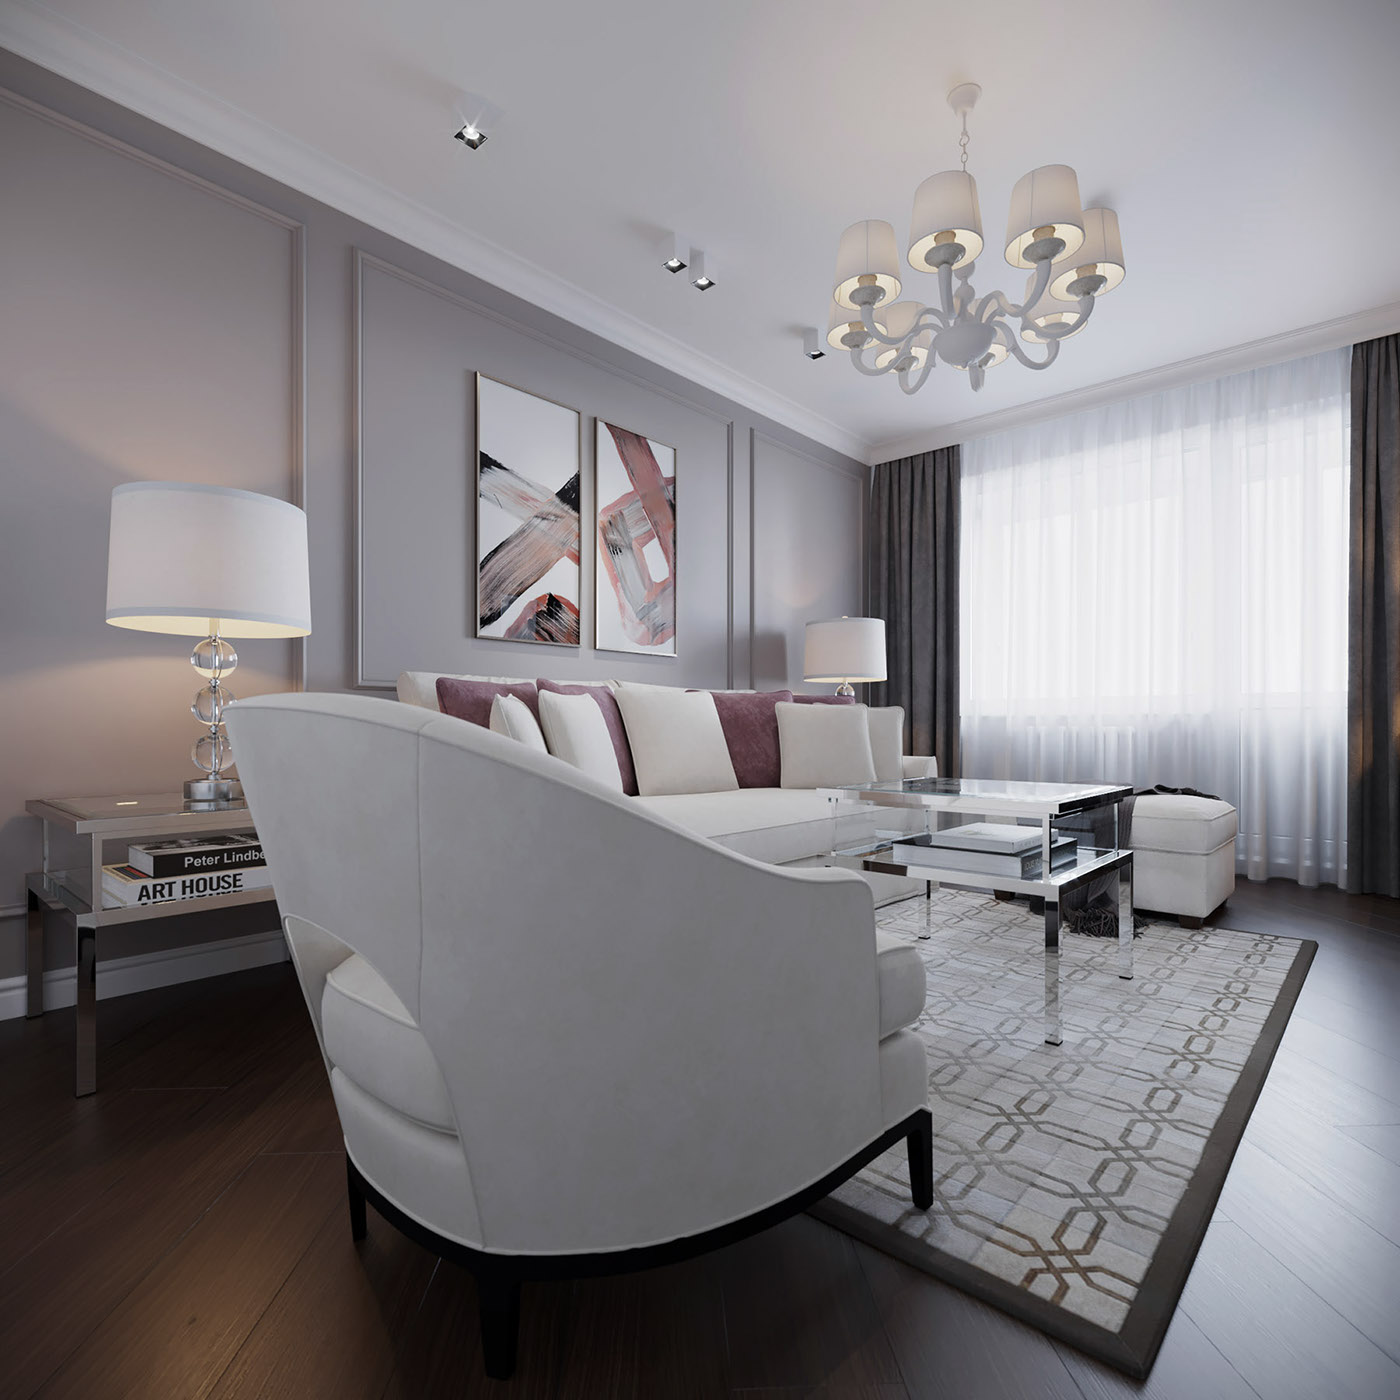 Interior design architecture furniture residential Classic